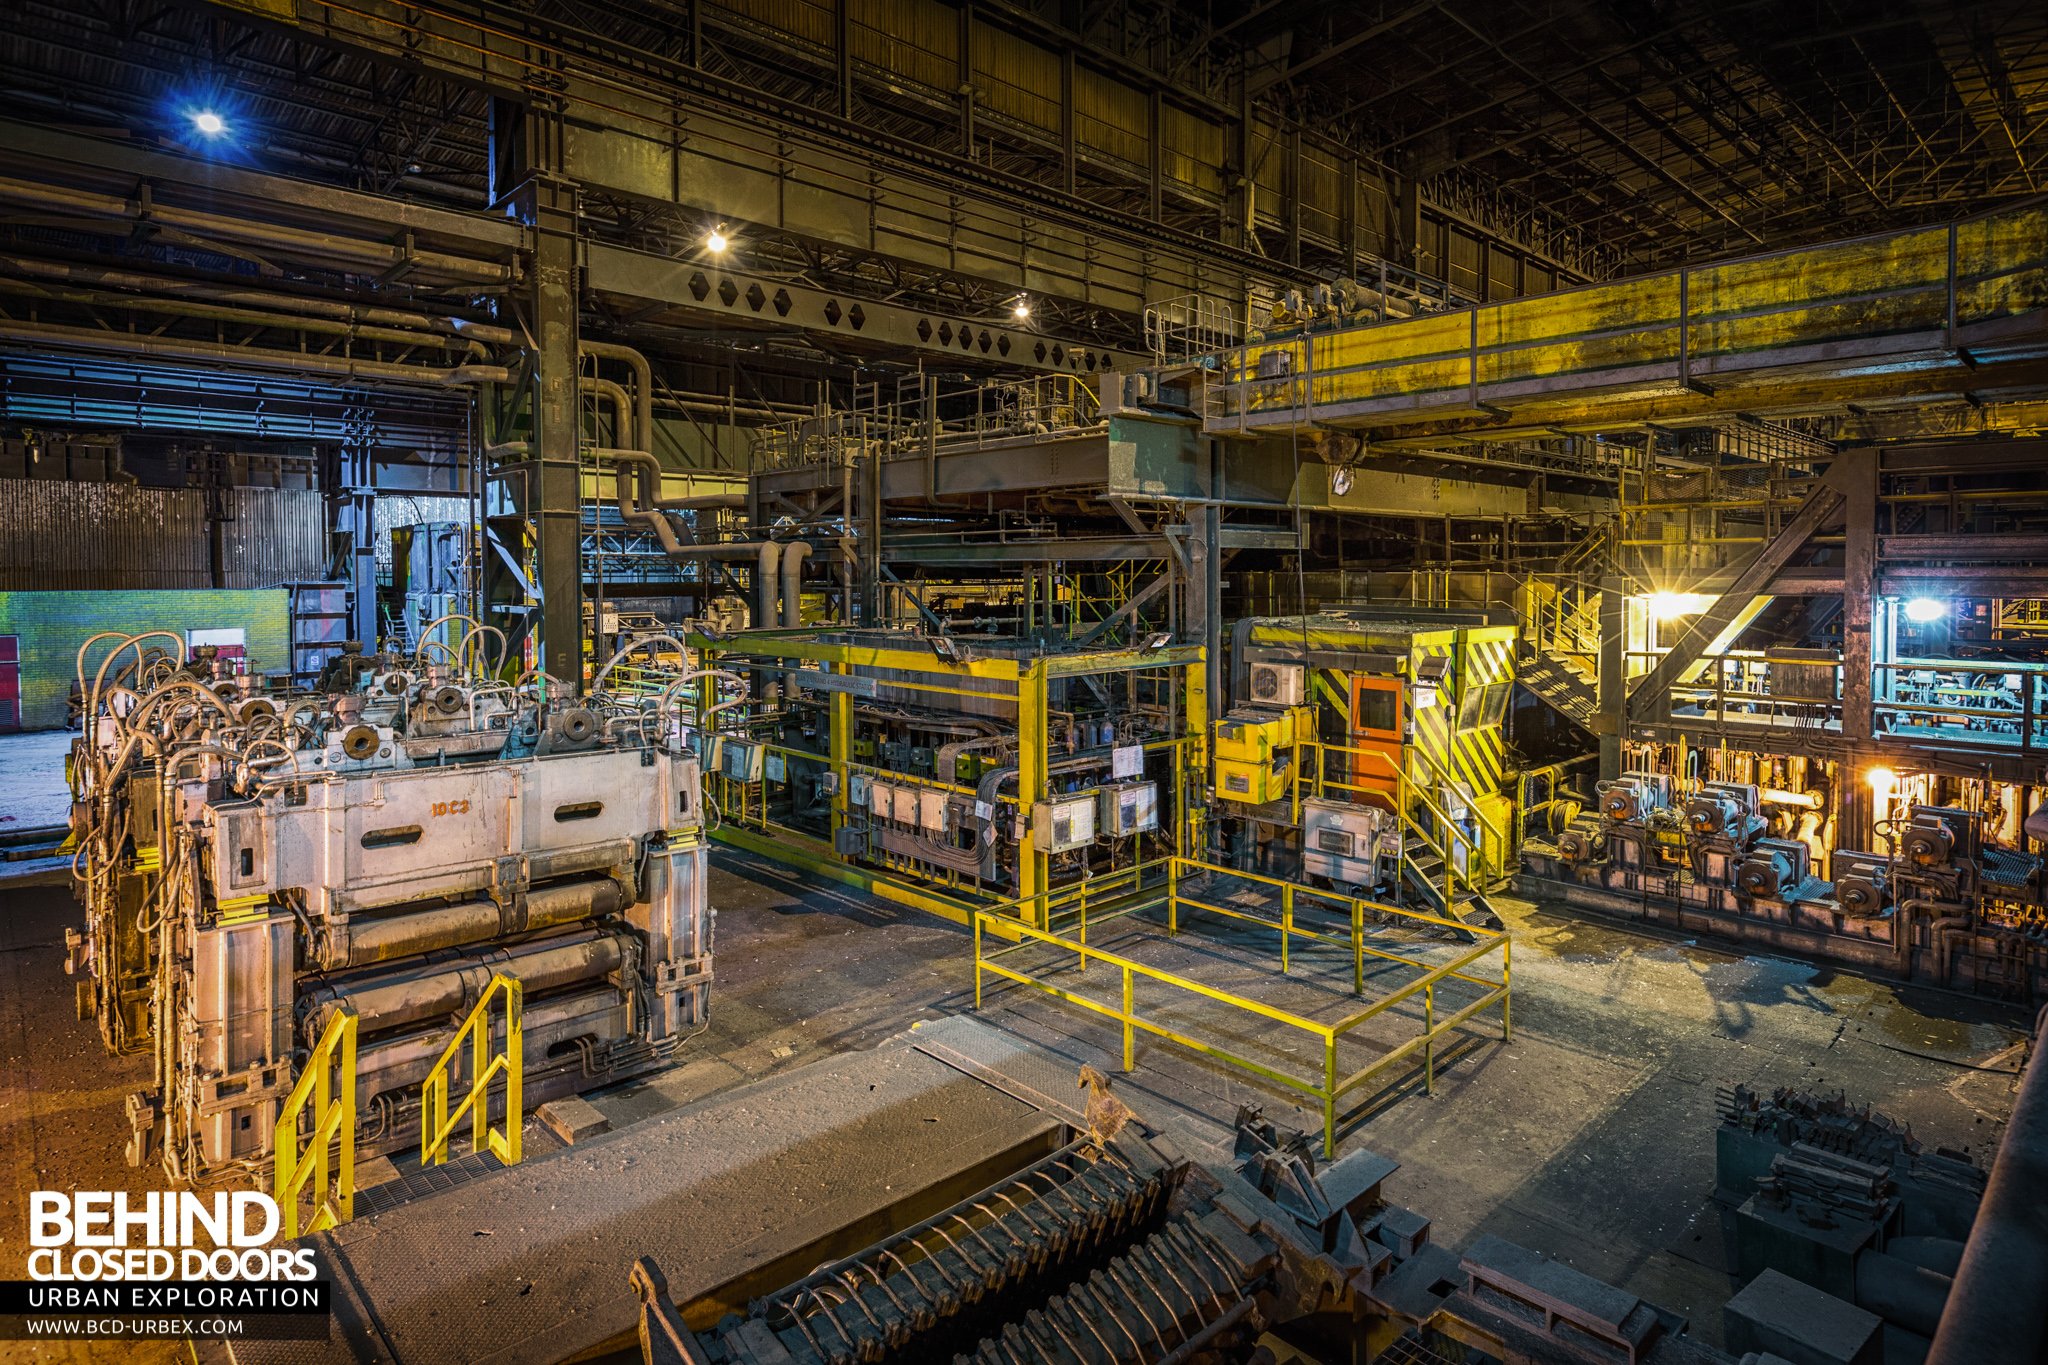 Lackenby Steelworks, Redcar, UK » Urbex | Behind Closed Doors Urban